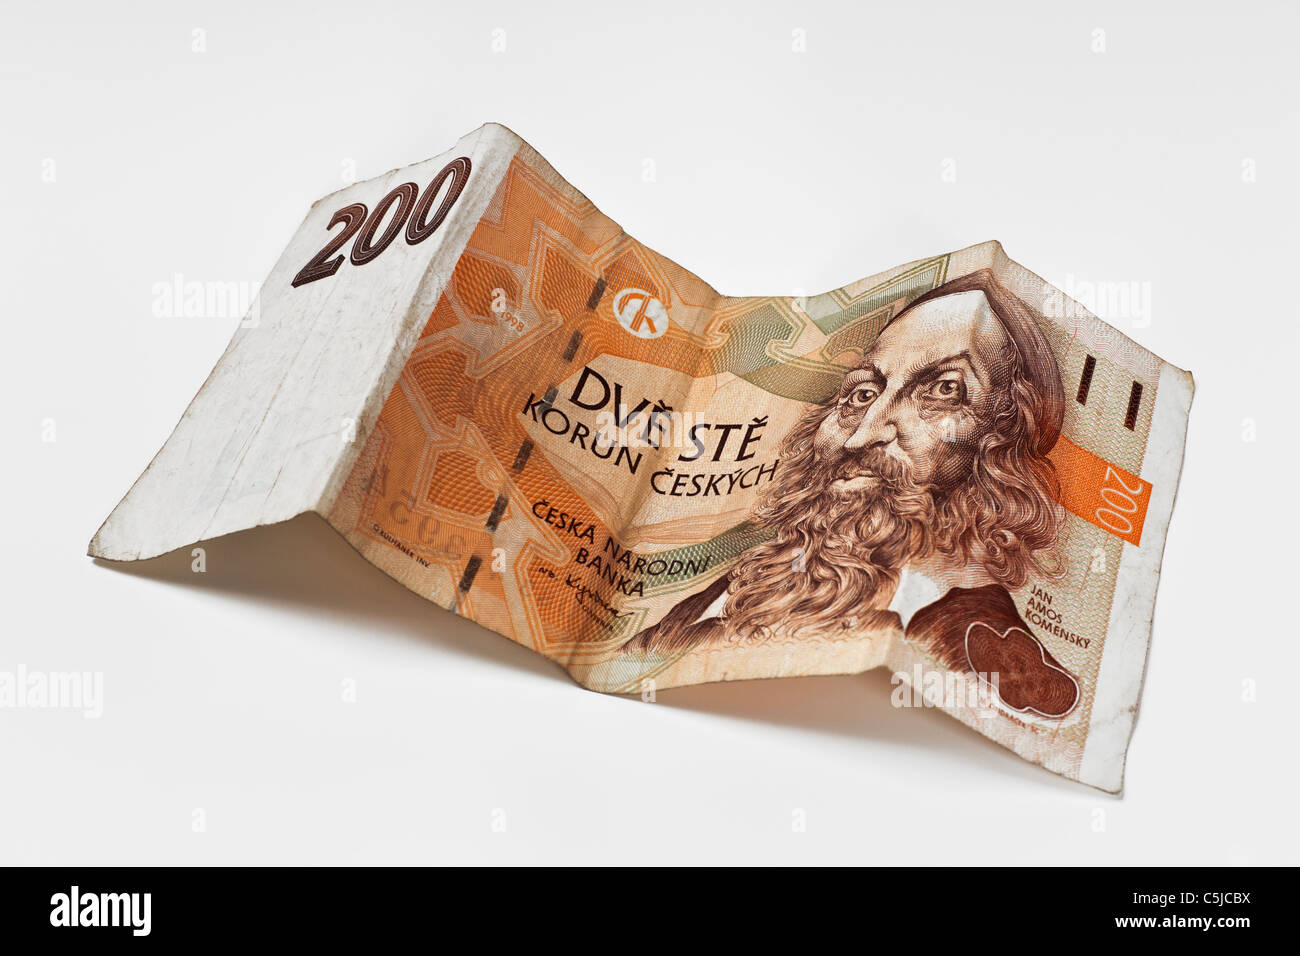 Detailansicht einer tschechischen 200 Kronen Banknote | Detail photo of a czech 200 koruna Banknote Stock Photo